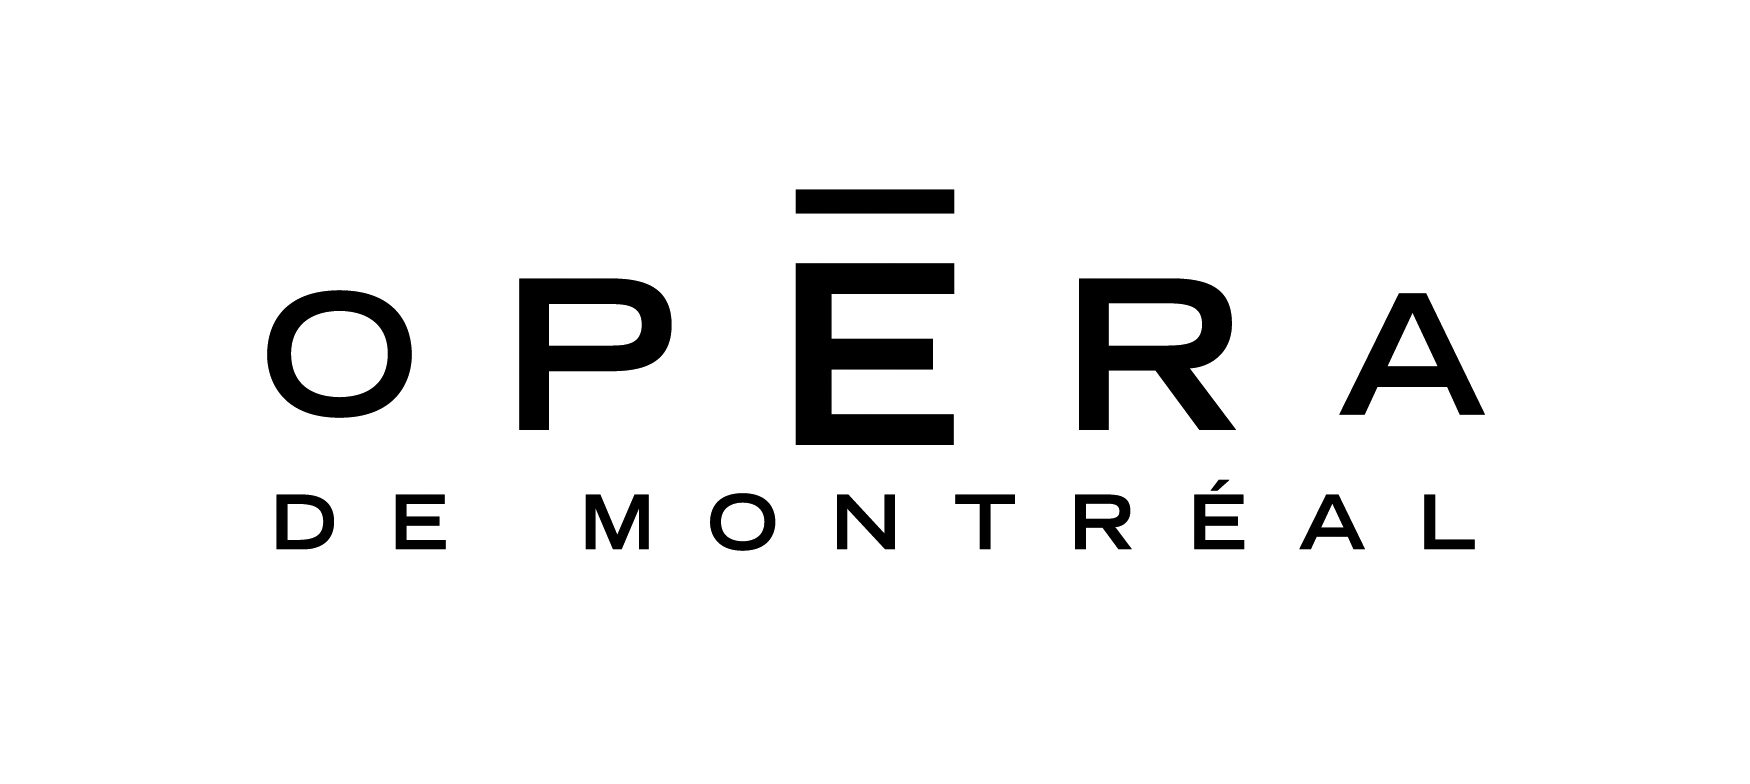 Opéra de Montréal